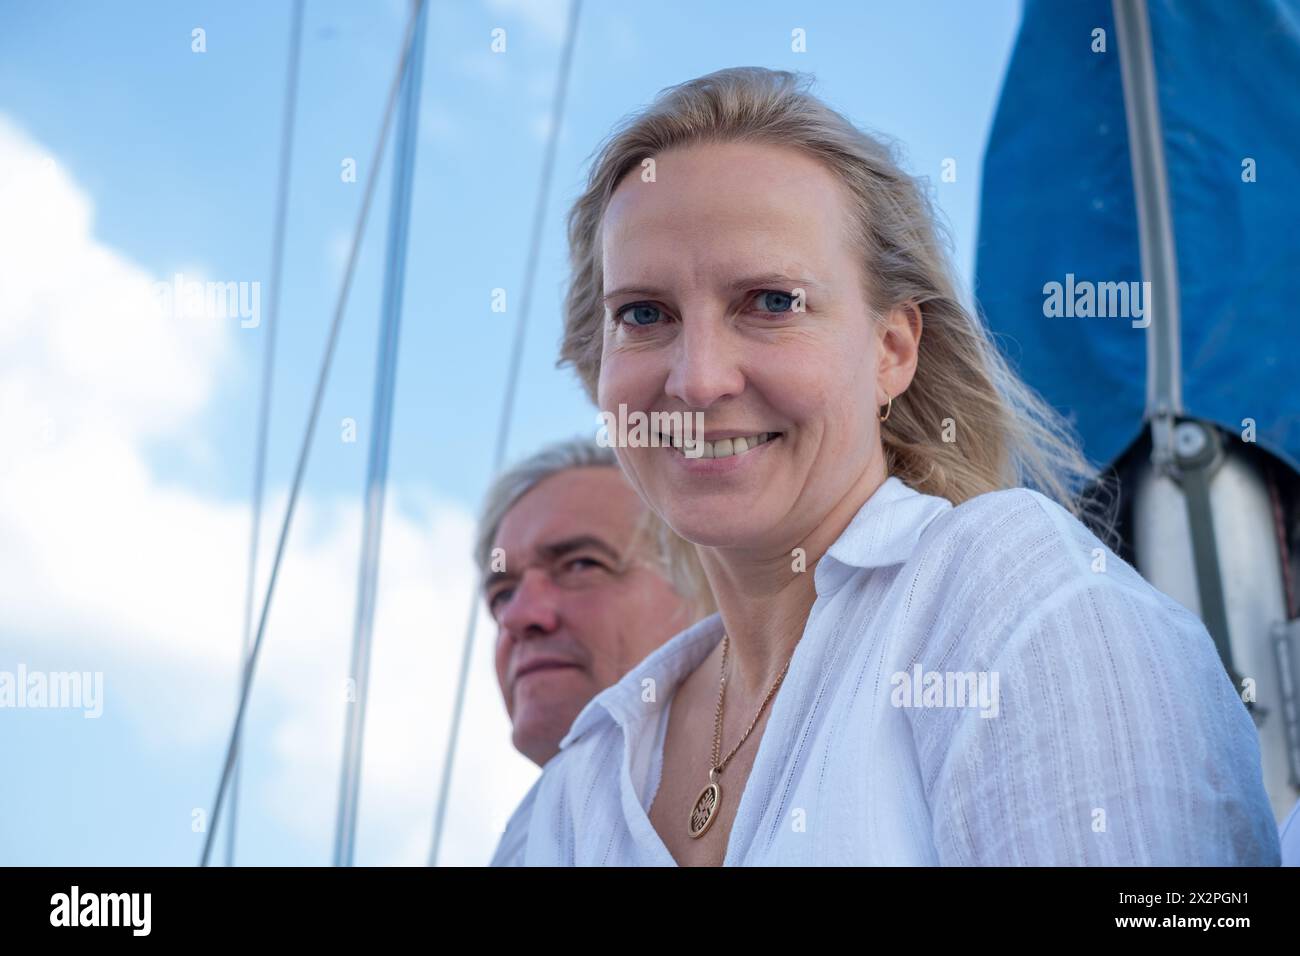 Femme souriante dans une blouse blanche avec un homme derrière elle sur un voilier, partageant un moment de joie sous un ciel bleu, idéal pour les loisirs et les thèmes de voyage. Bonjour Banque D'Images